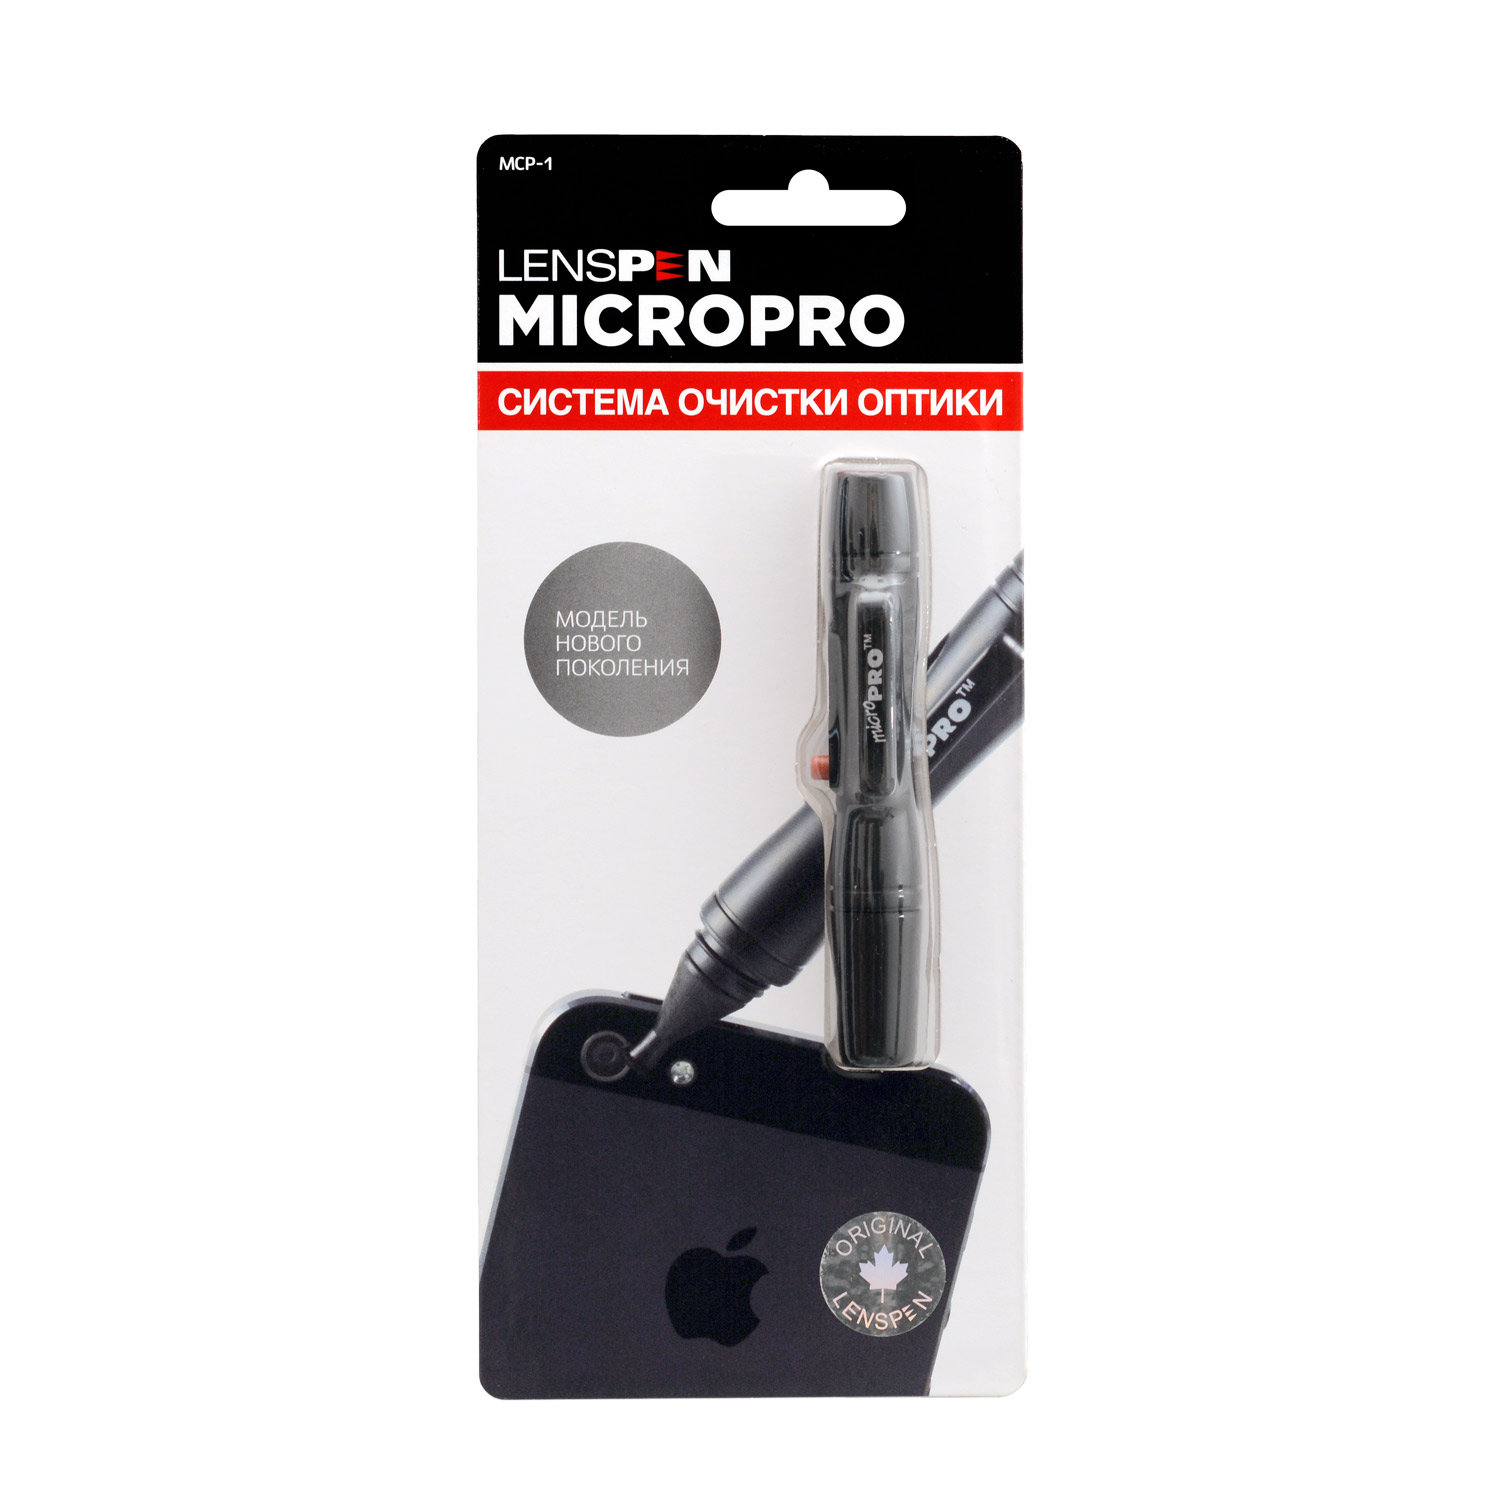 Карандаш для чистки оптики Lenspen MicroPro купить по оптимальной цене,  доставка по России, гарантия качества